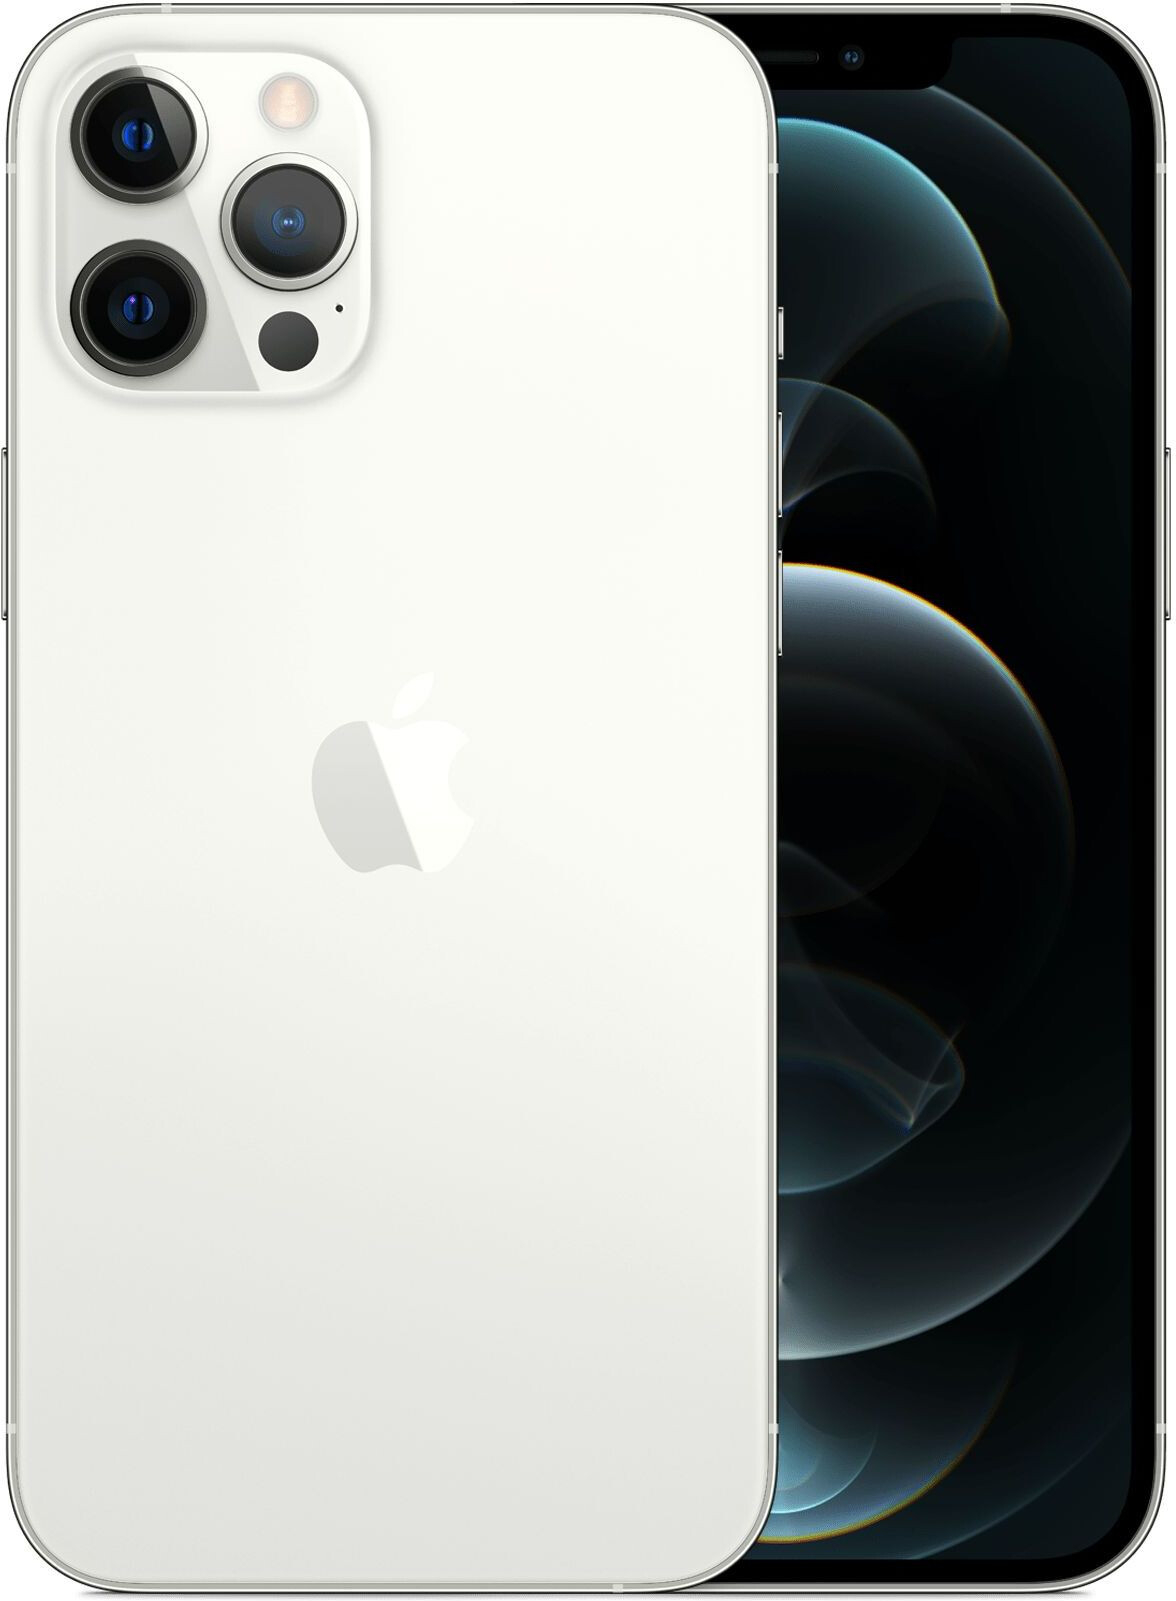 iPhone 12 Pro Max Dual Sim 128GB Silver (MGC13) 